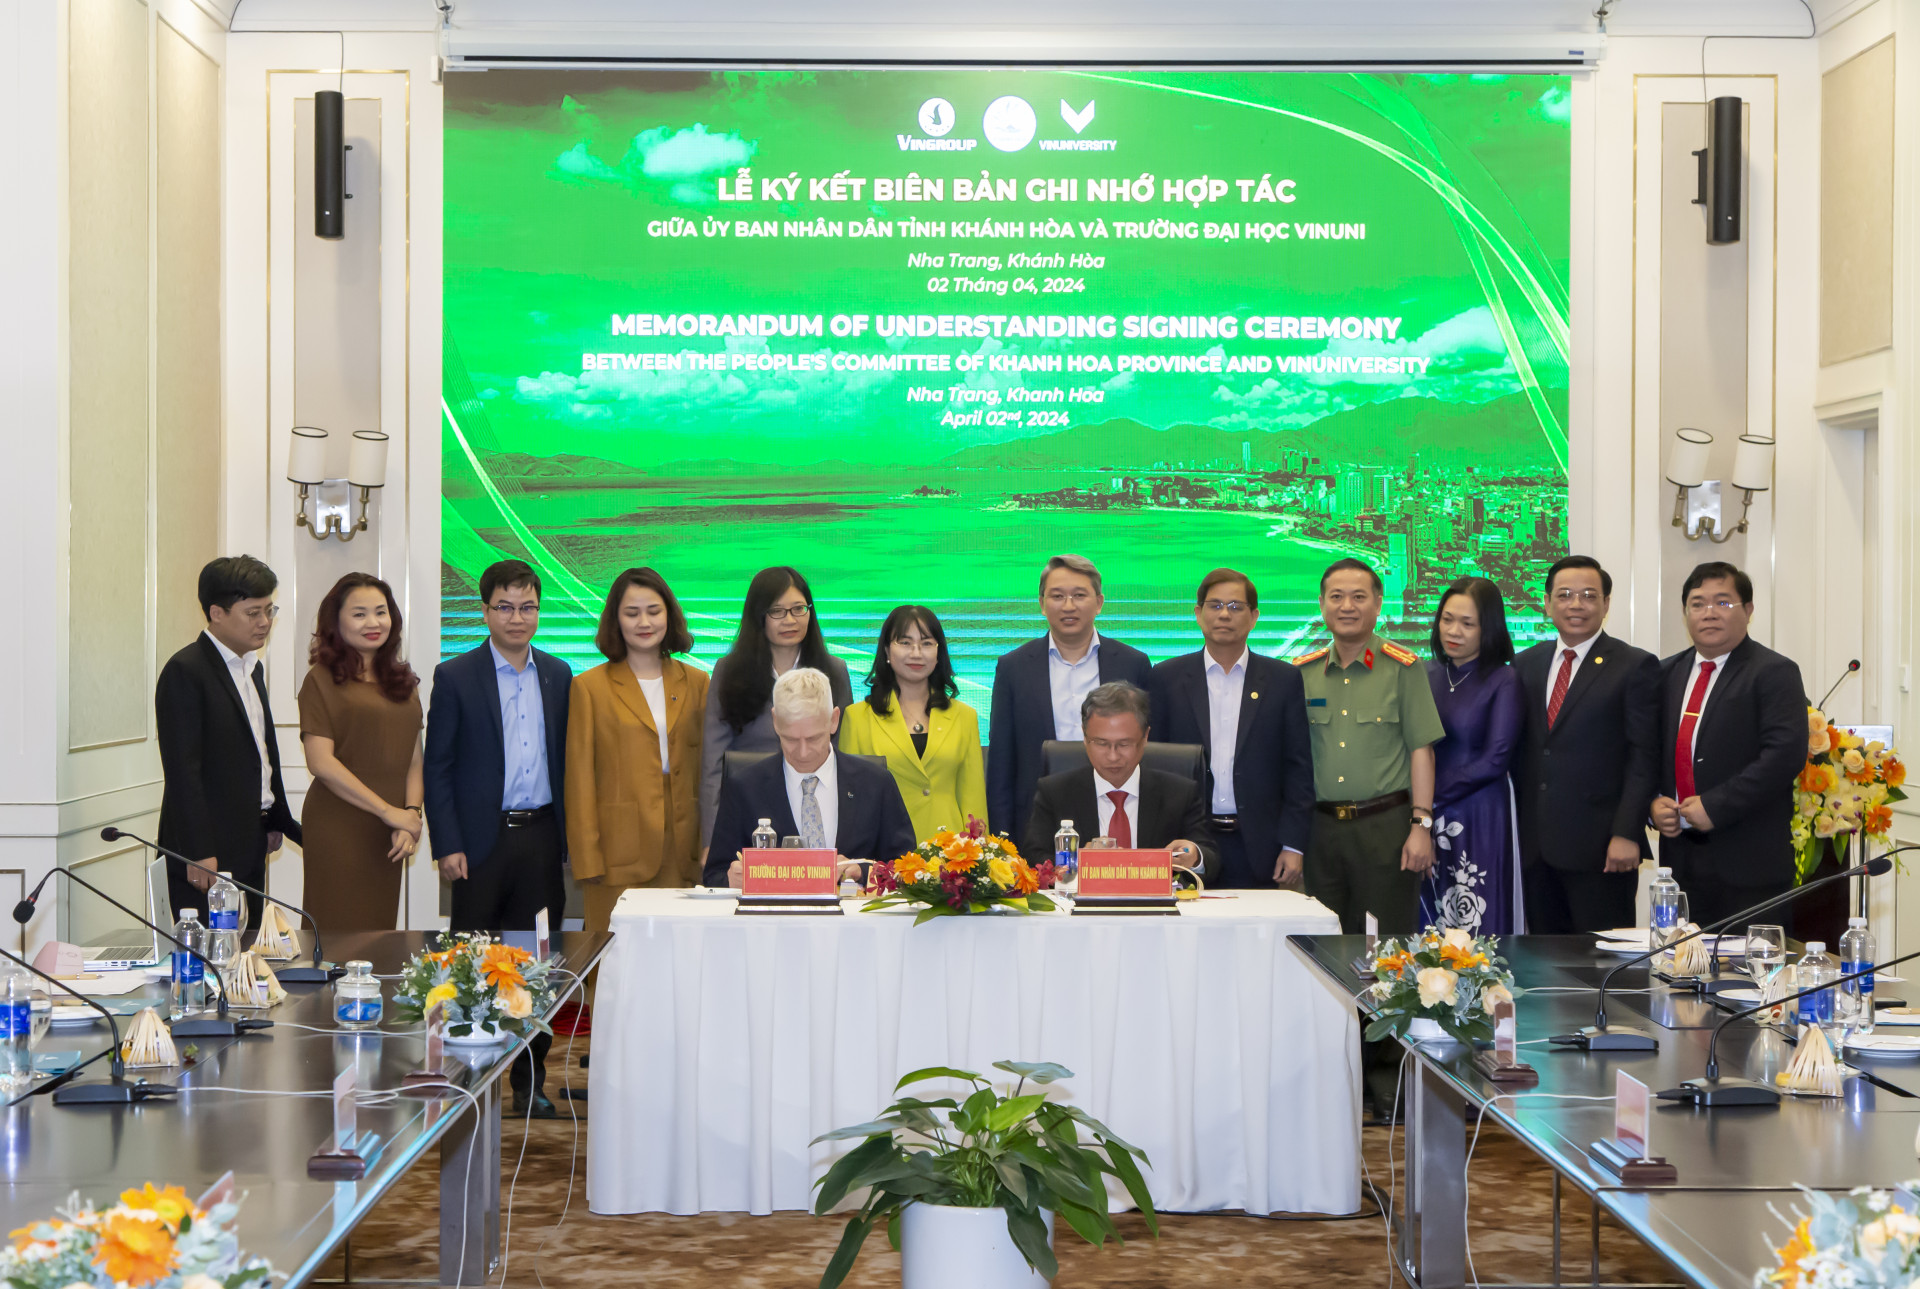 Memorandum of Understanding Signing Ceremony between VinUniversity and Khanh Hoa Provincial People’s Committee